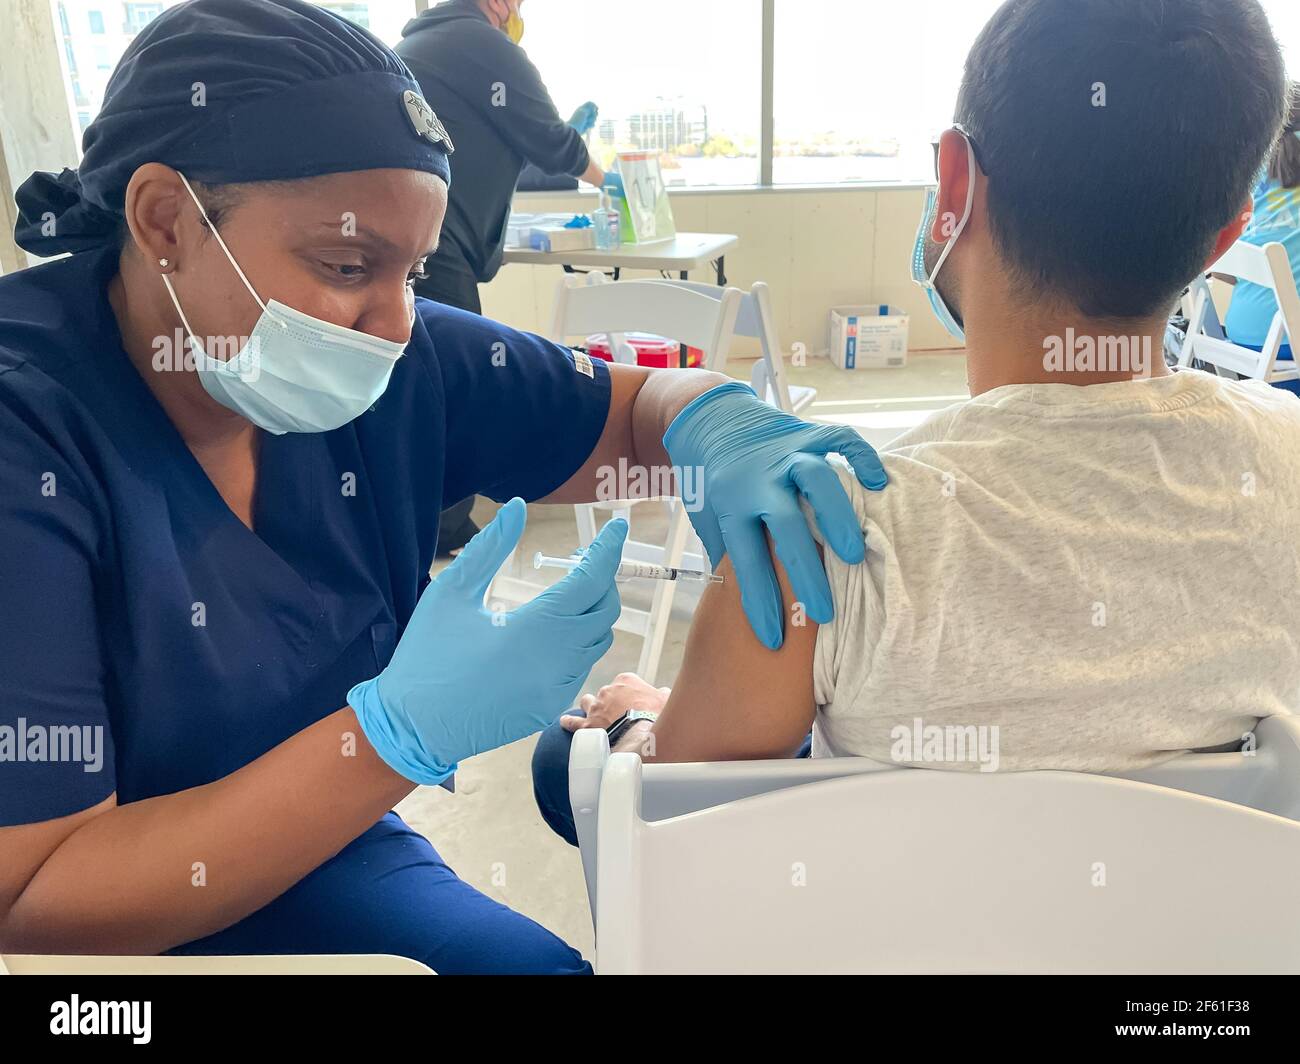 Frisco TX, États-Unis - 26 mars 2021 : vue rapprochée de l'infirmière de l'hôpital Baylor Scott et White qui injecte le vaccin Covid-19 au patient Banque D'Images